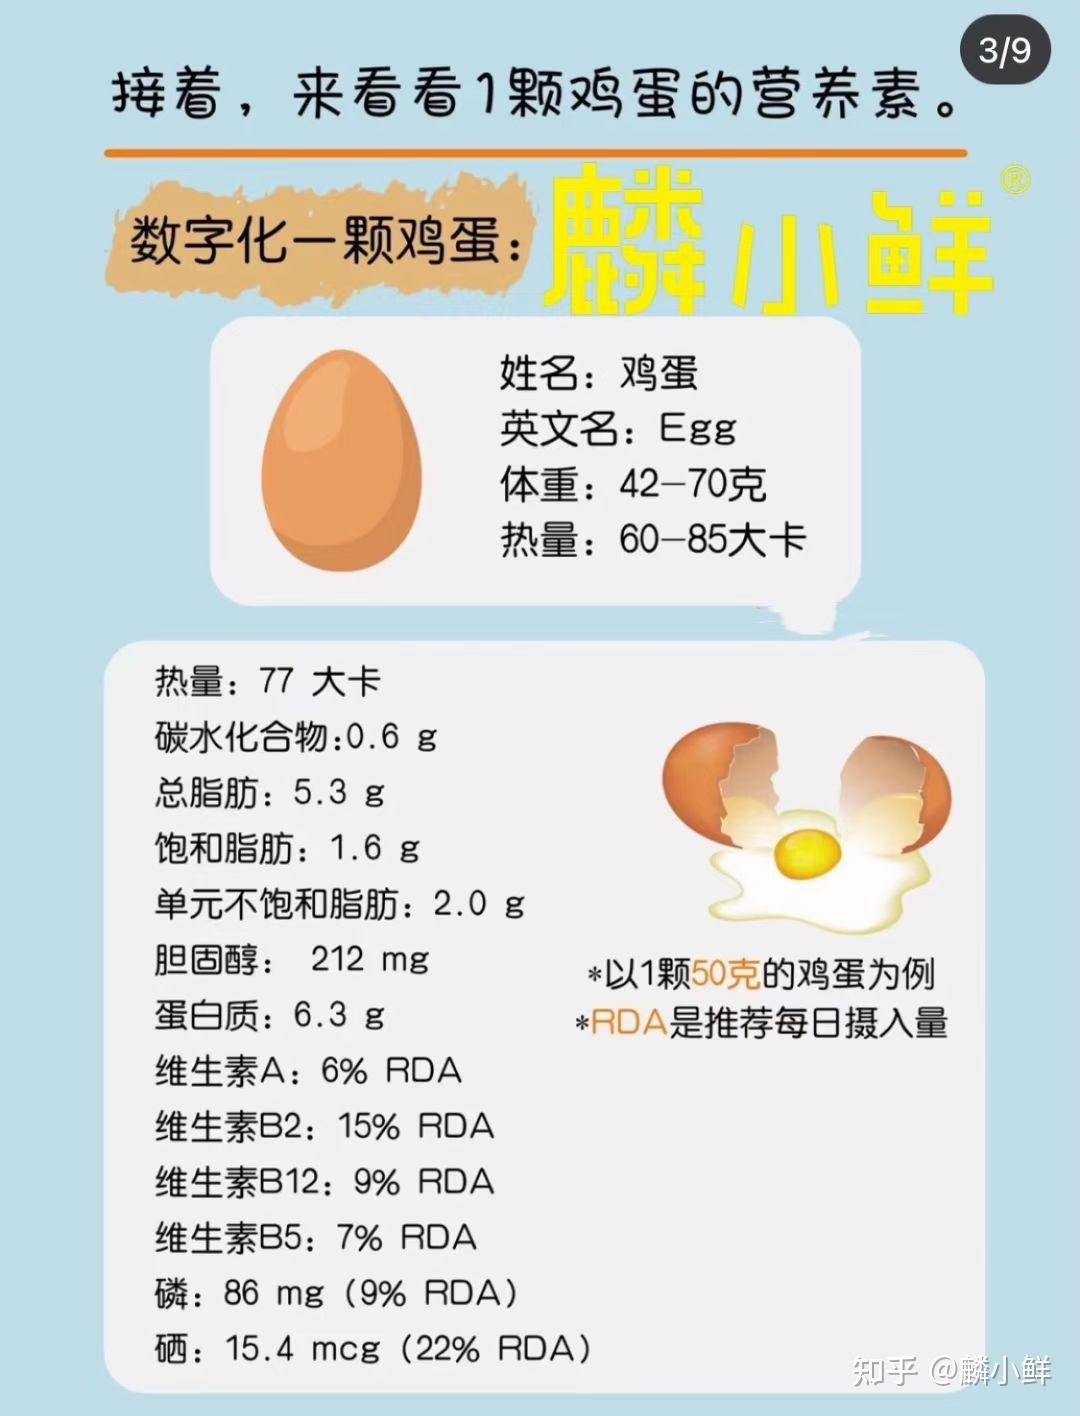 麟小鲜来告诉您一天能吃几个鸡蛋每天一个蛋营养全在线04